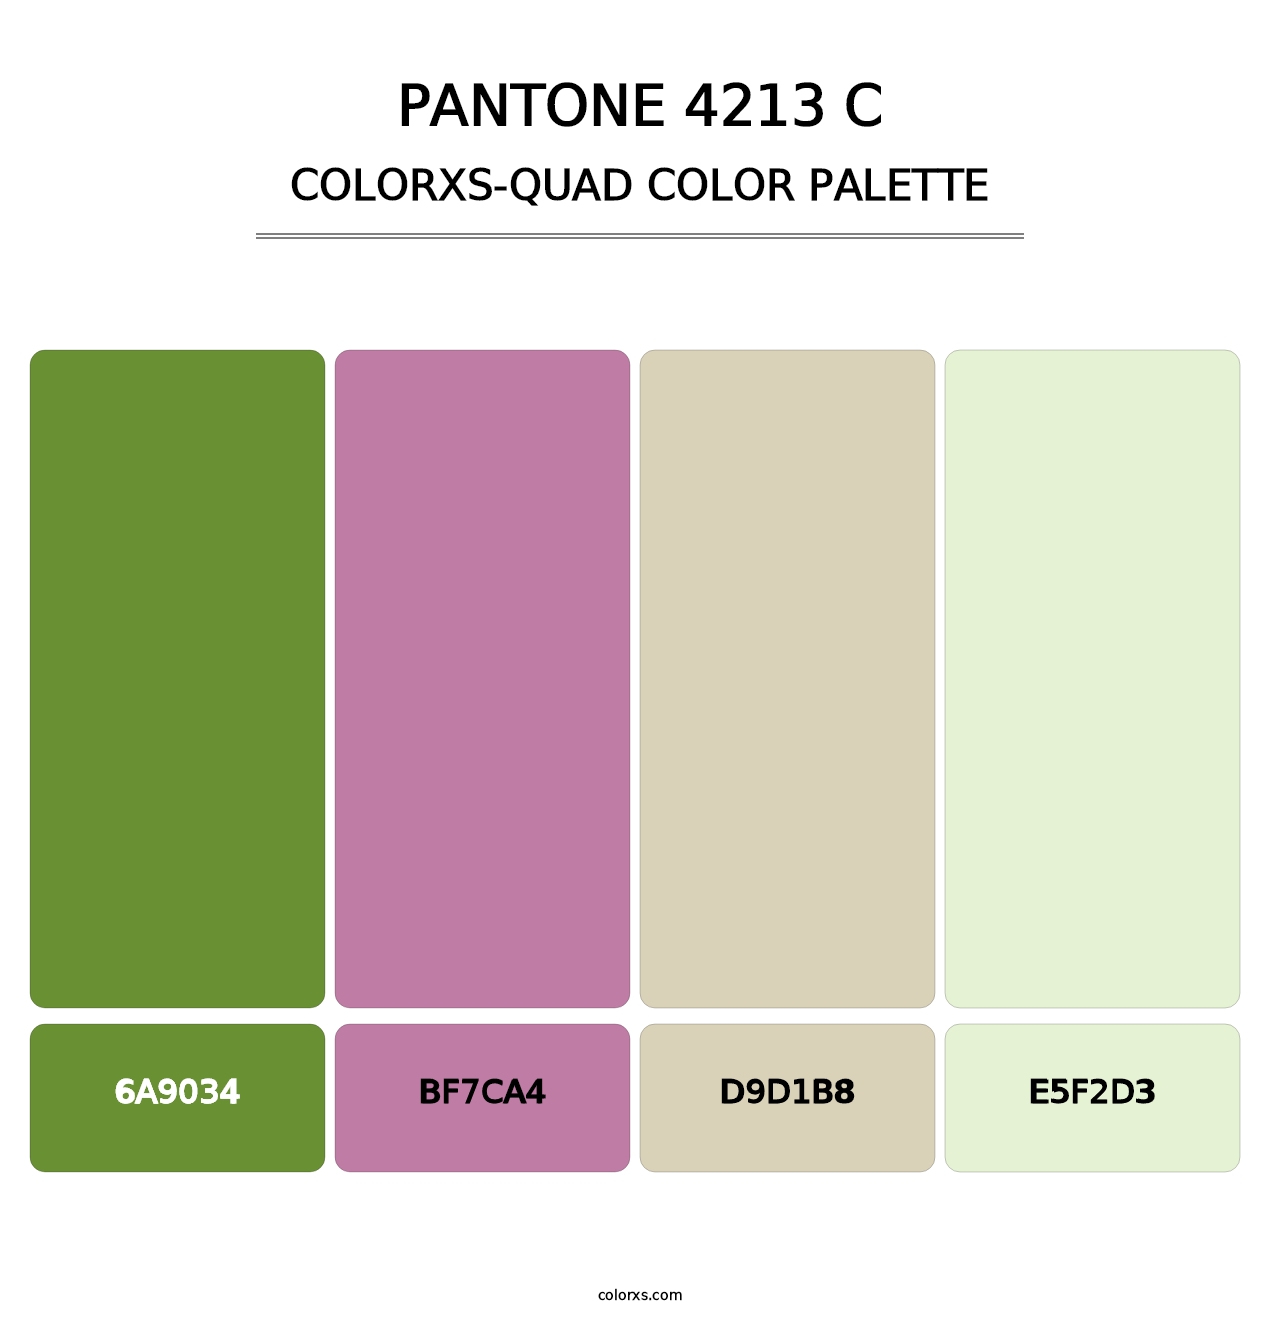 PANTONE 4213 C - Colorxs Quad Palette